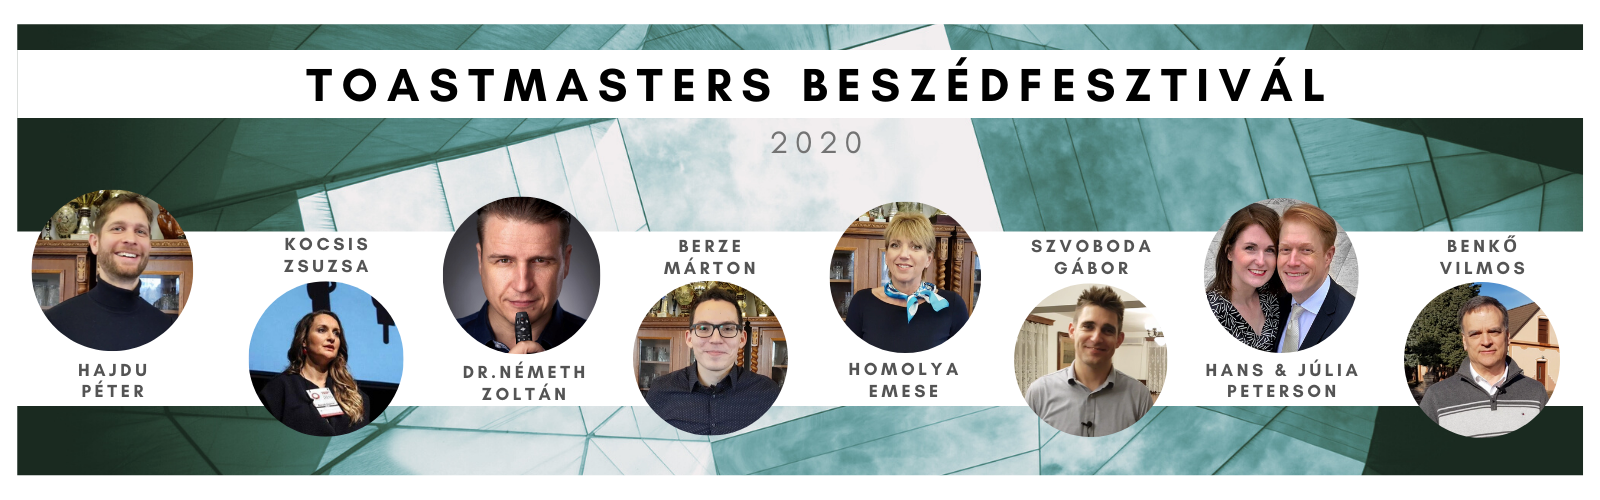 You are currently viewing Toastmasters Beszédfesztivál: interjúsorozat összefoglaló